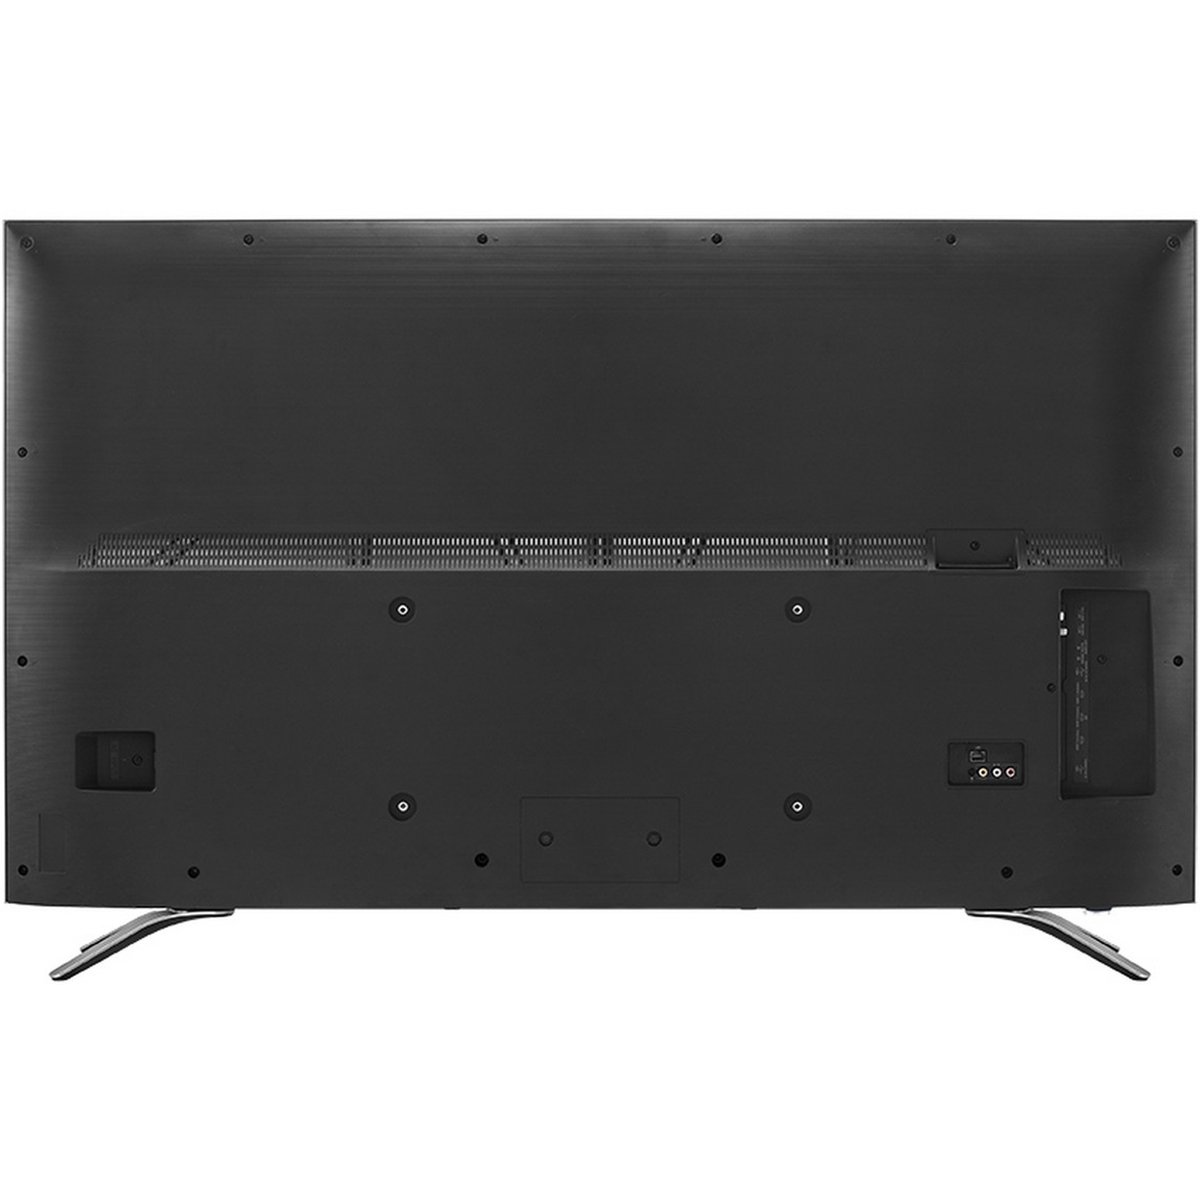 Hisense 4K Ultra HD Smart LED TV 55A6500UW 55inch